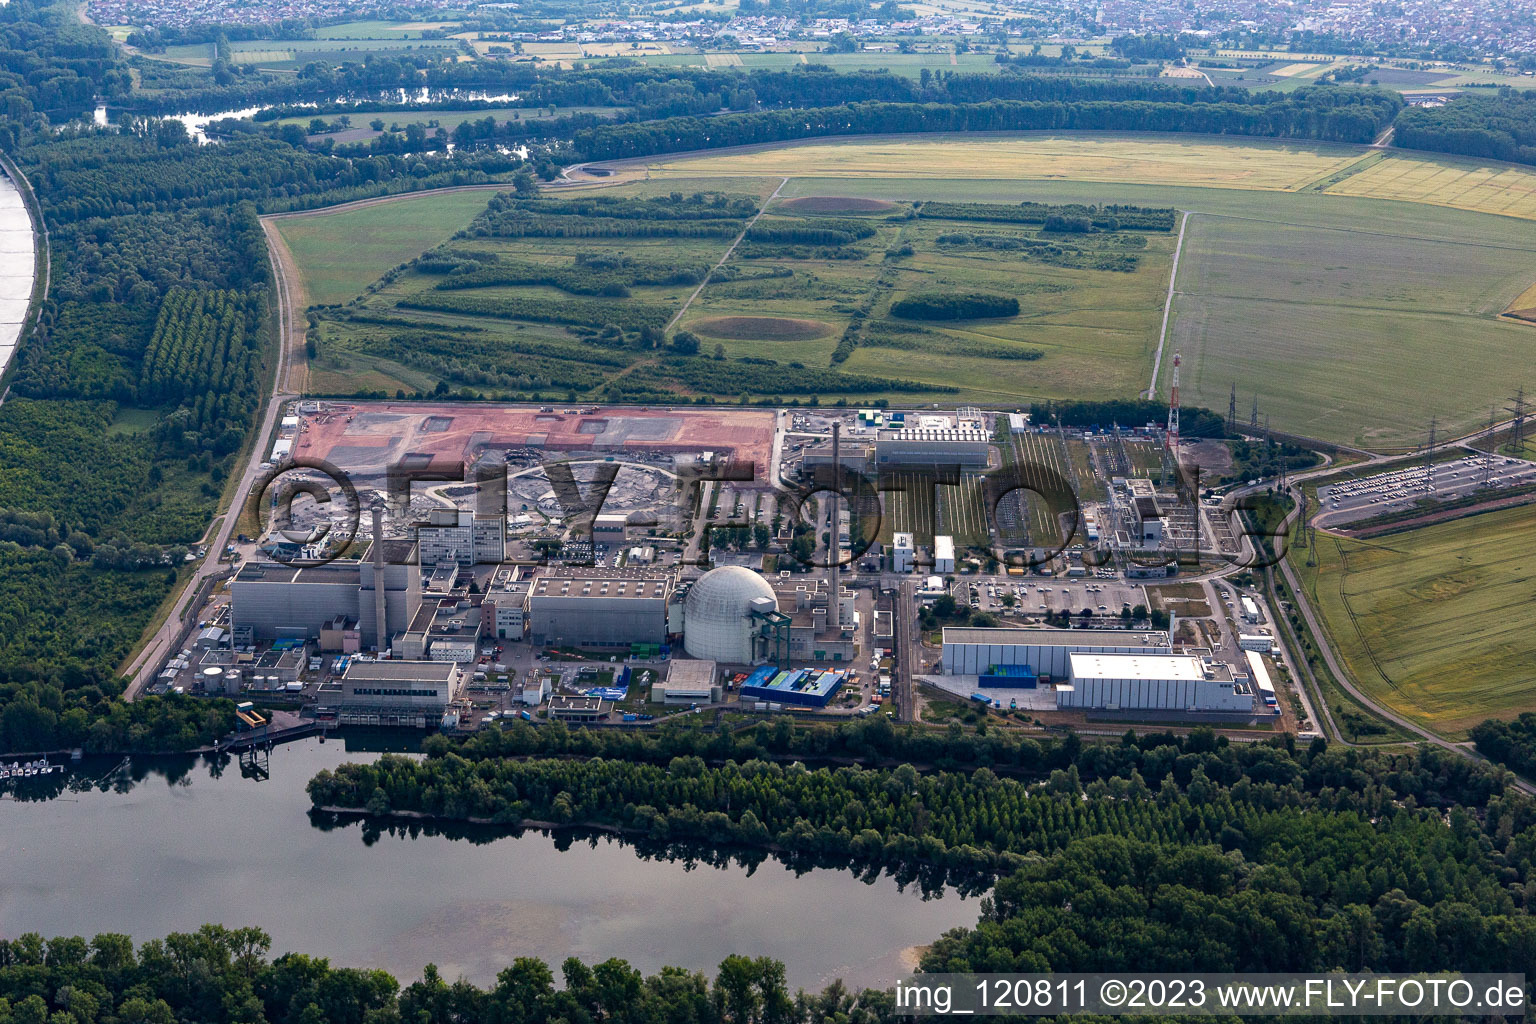 Vue aérienne de Vestiges des blocs réacteurs et installations déclassés de la centrale nucléaire - NPP Kernkraft EnBW Kernkraft GmbH, centrale nucléaire Philippsburg et décombres des deux tours de refroidissement à Philippsburg dans le département Bade-Wurtemberg, Allemagne